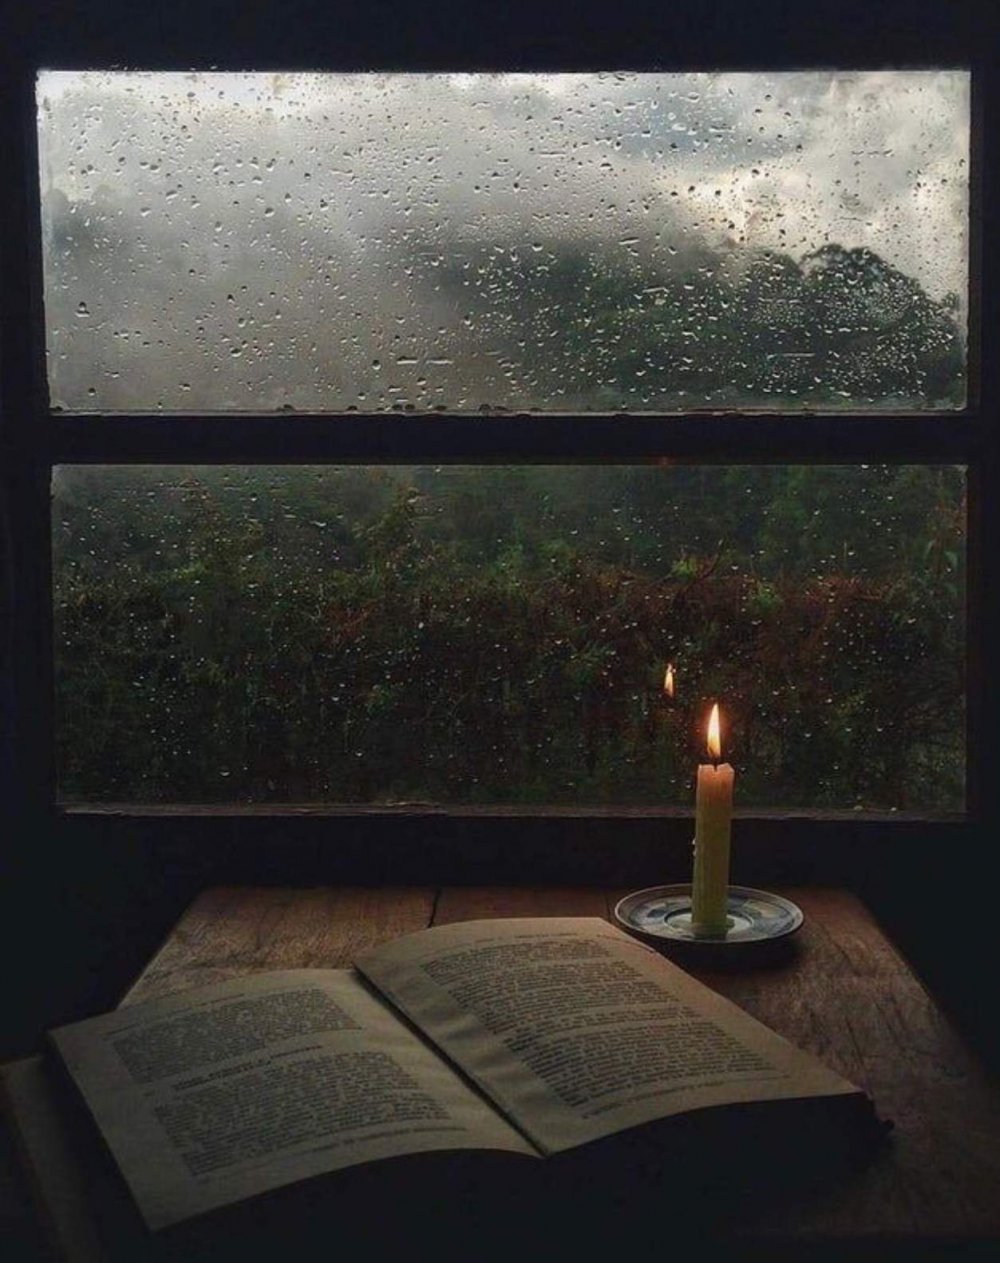 Дождь за окном